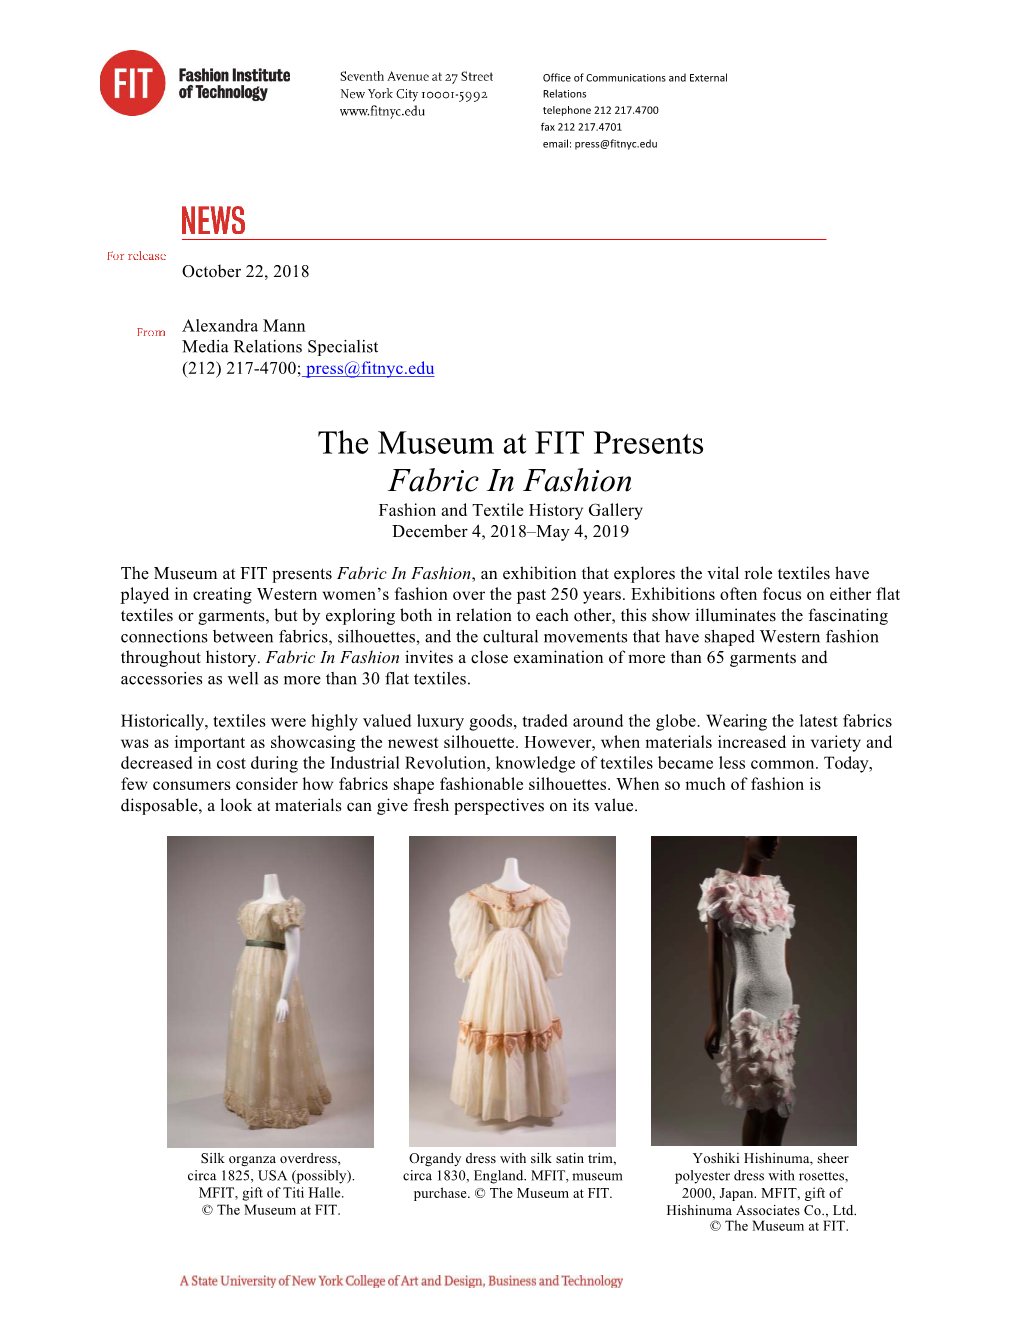 Fabric in Fashion Press Release